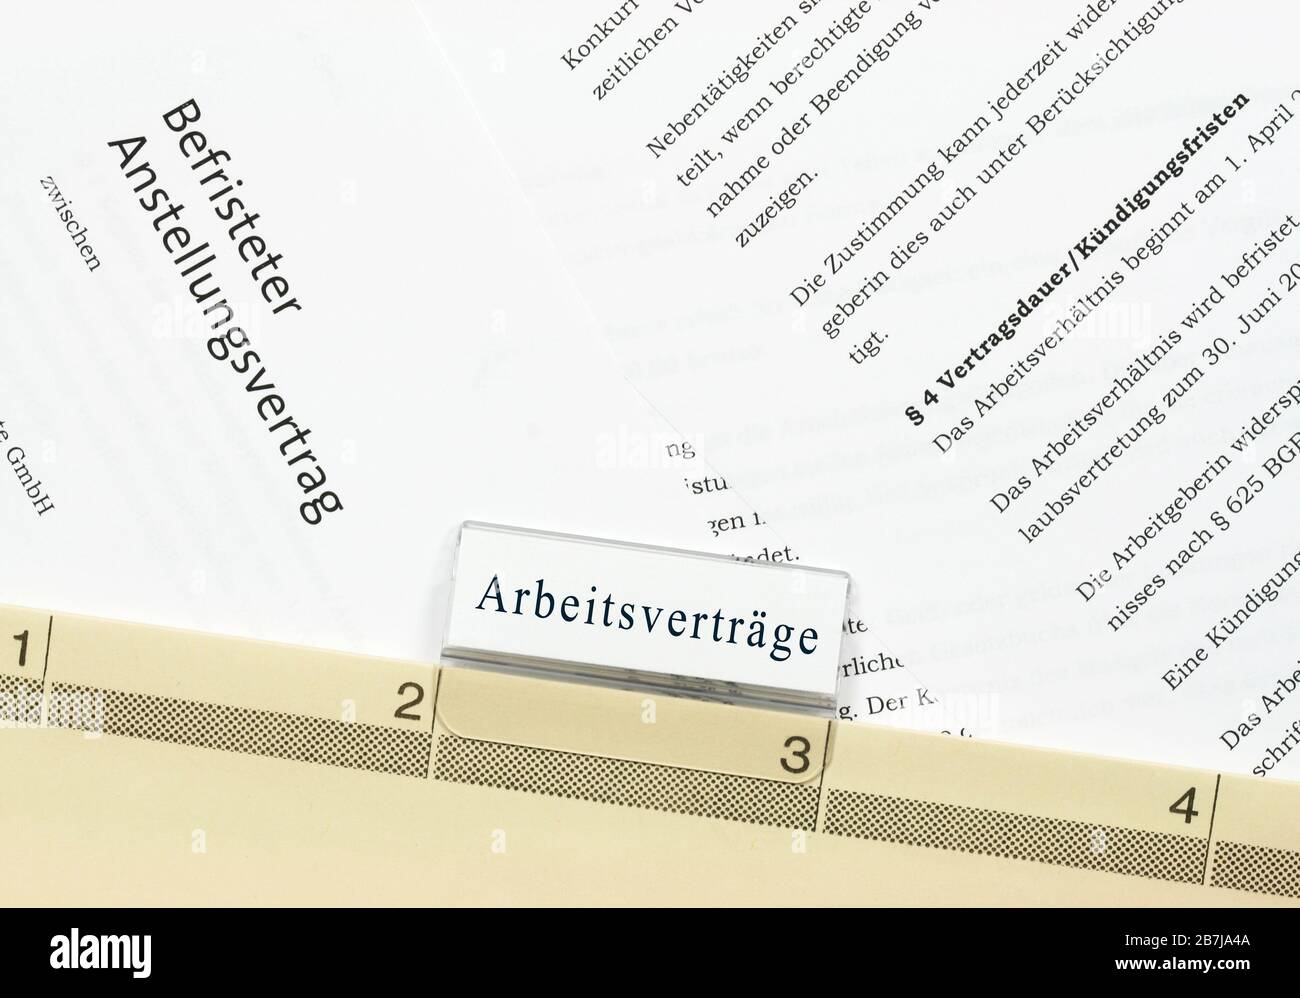 Befristeter Arbeitsvertrag: Acuerdo de empleo a corto plazo alemán, archivado en un archivo de suspensión Foto de stock